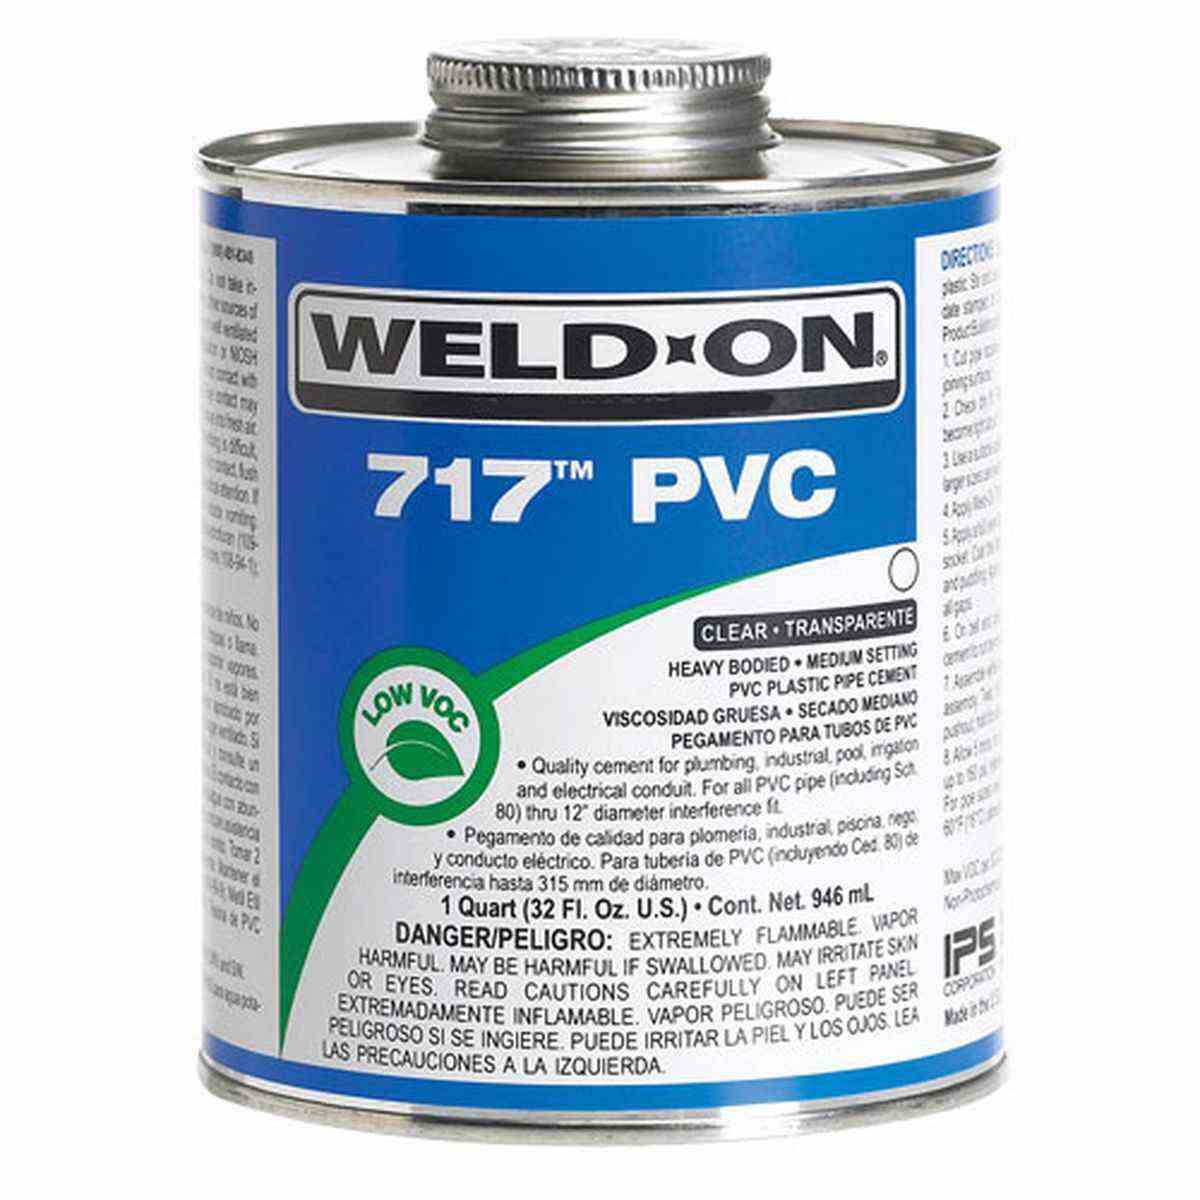 Pegamento de PVC de 0.71 oz, pegamento para ABS, profesional para todo tipo  de tubos de PVC, productos ABS, plástico duro, vidrio, acrílico. Adecuado